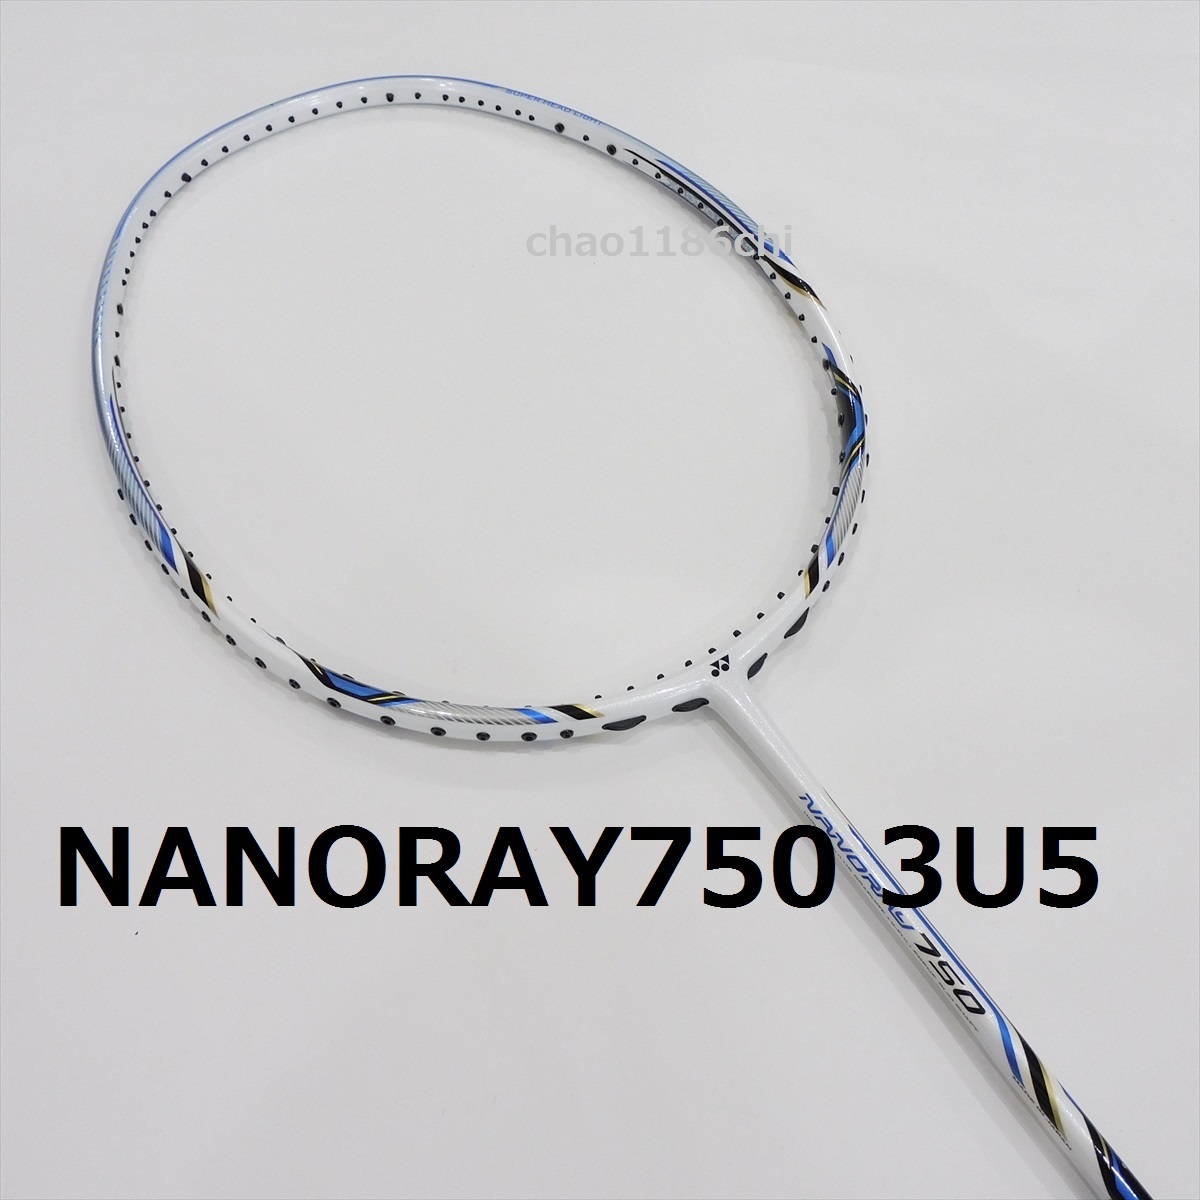 ナノレイ700RP 4u5 - バドミントン